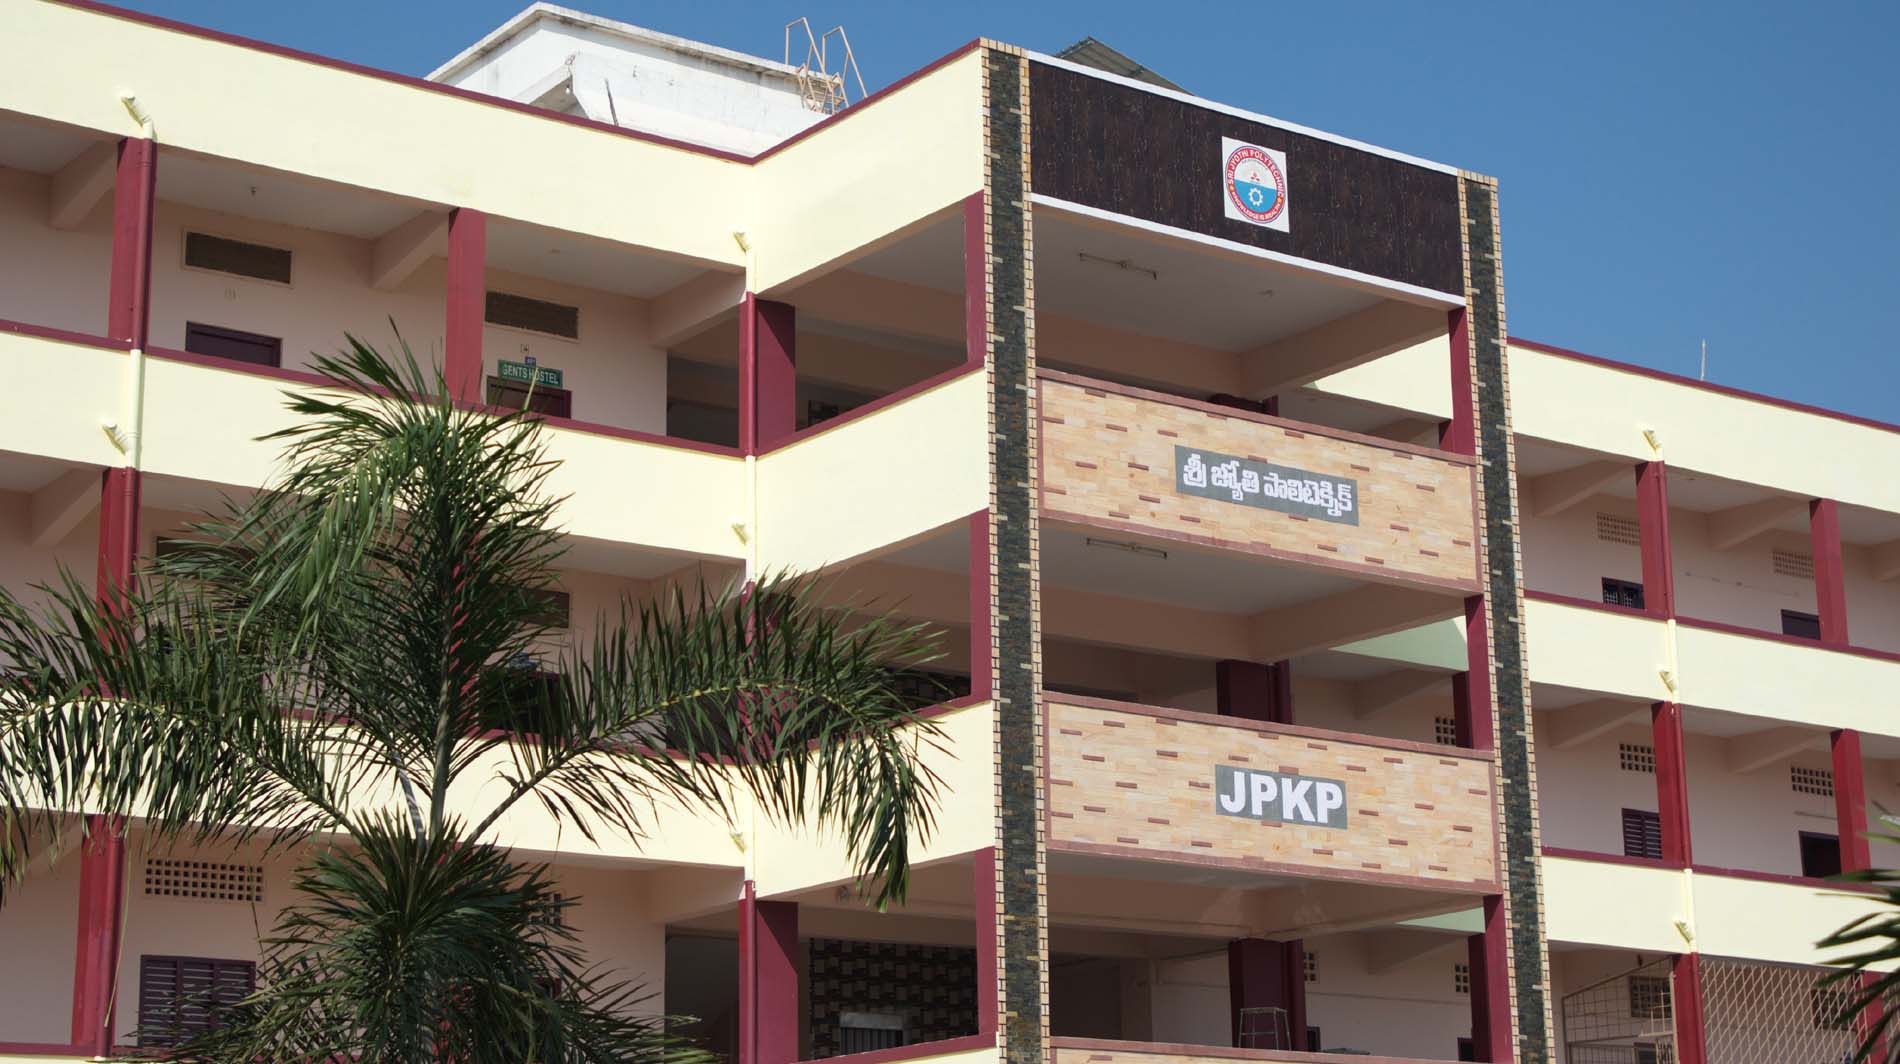 Sri Jyothi Polytechnic